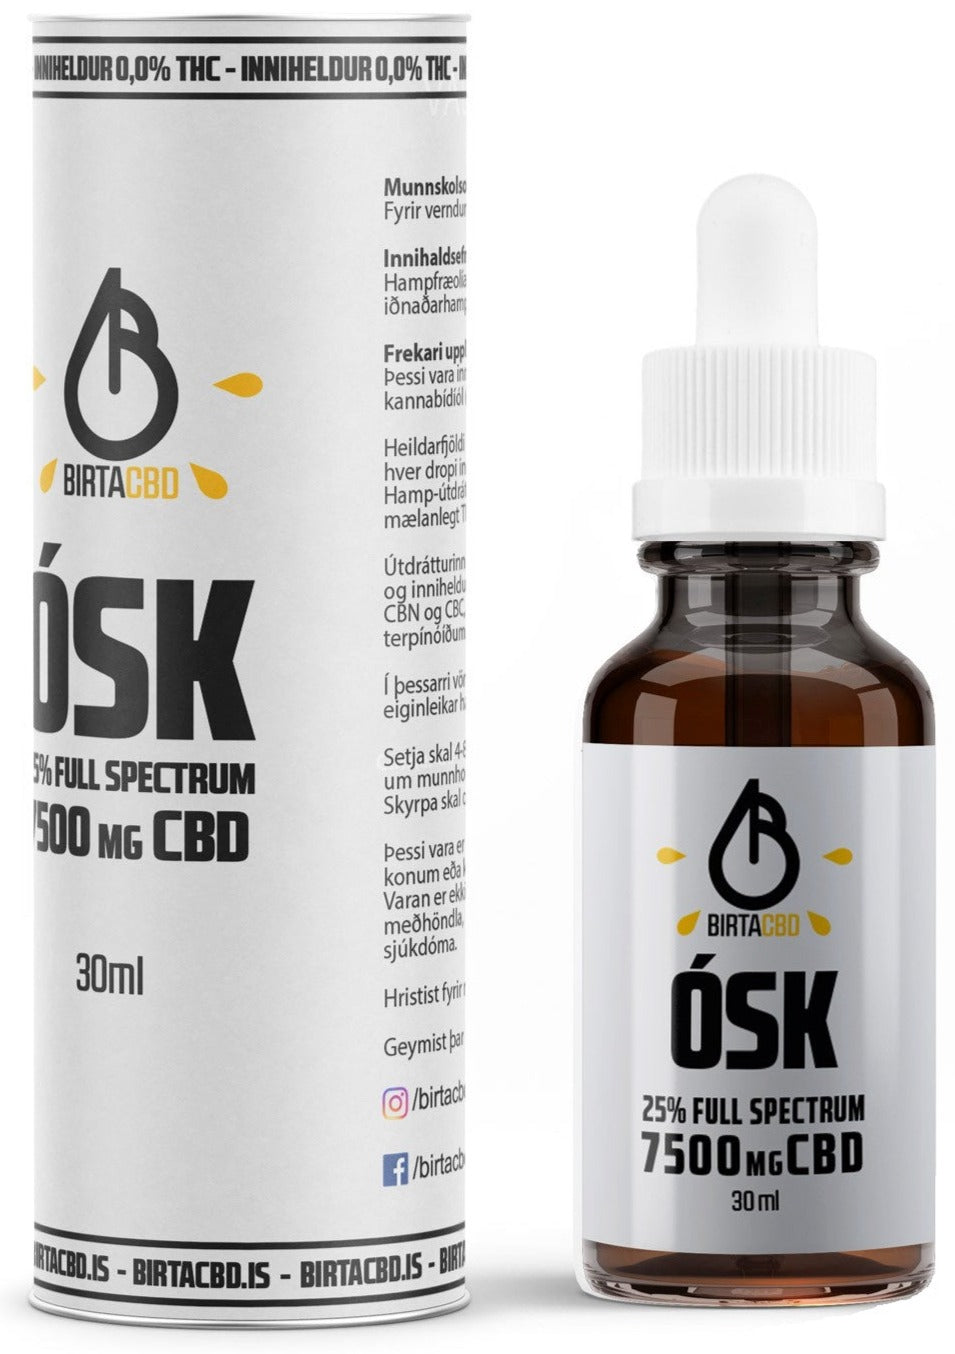 Stór ÓSK - 7500mg - 25% Full Spectrum CBD olía